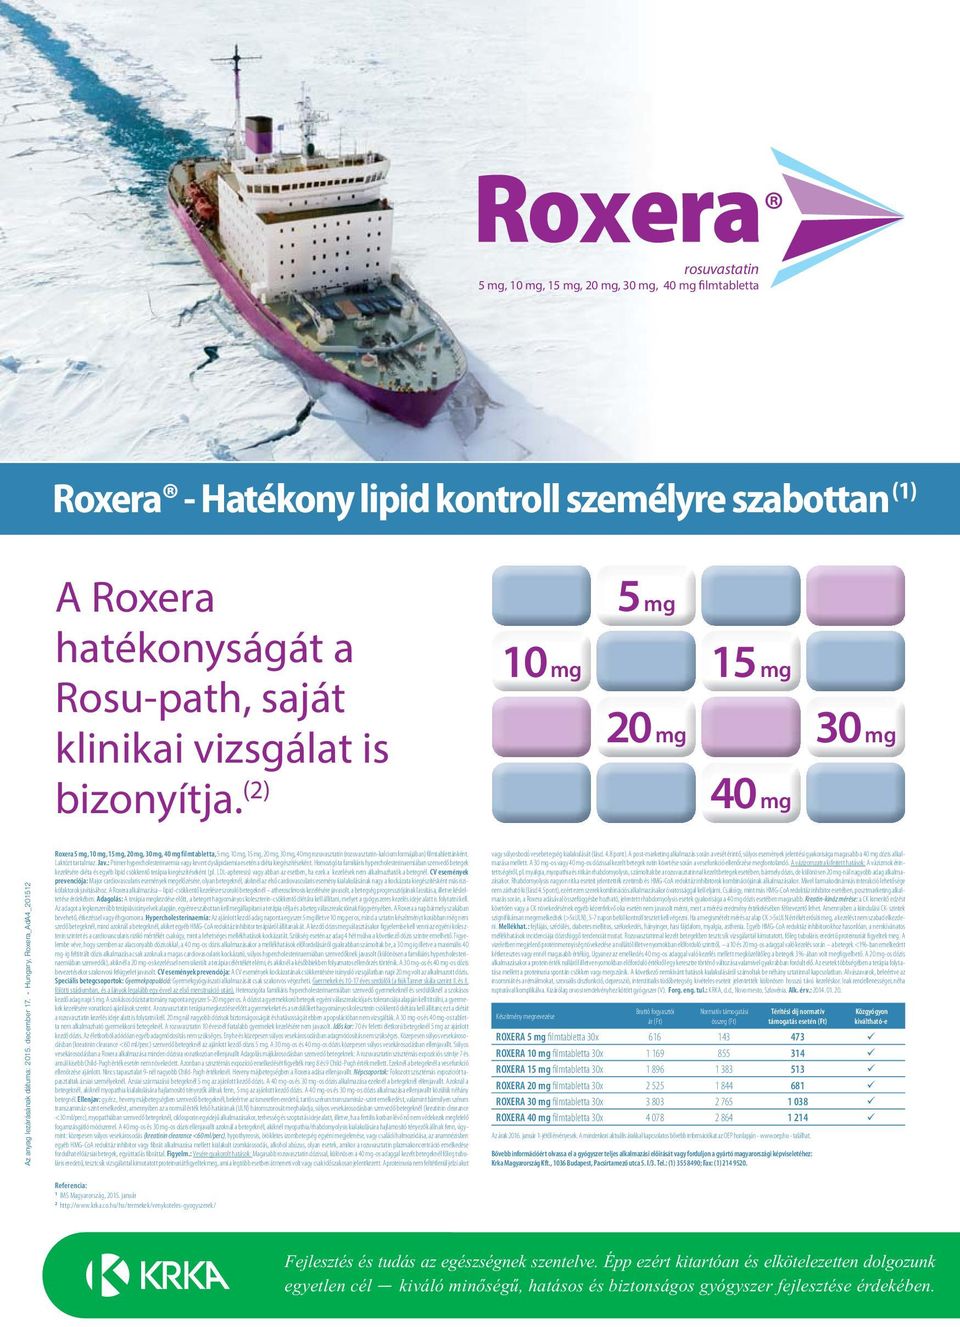 - Hungary, Roxera_AdA4_201512 Roxera 5 mg, 10 mg, 15 mg, 20 mg, 30 mg, 40 mg filmtabletta, 5 mg, 10 mg, 15 mg, 20 mg, 30 mg, 40 mg rozuvasztatin (rozuvasztatin-kalcium formájában) filmtablettánként.